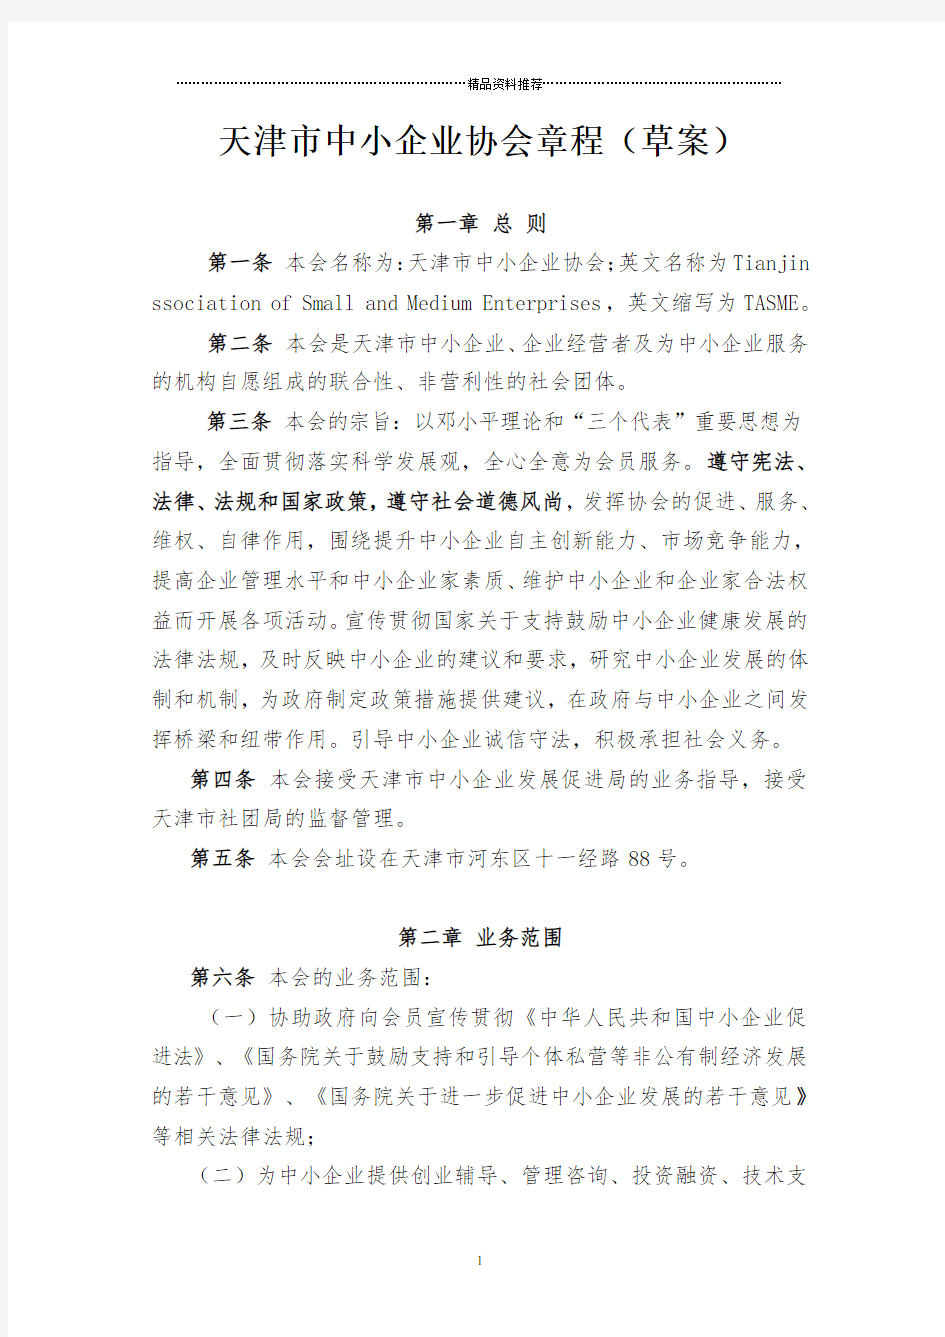 天津市中小企业协会章程(草案)